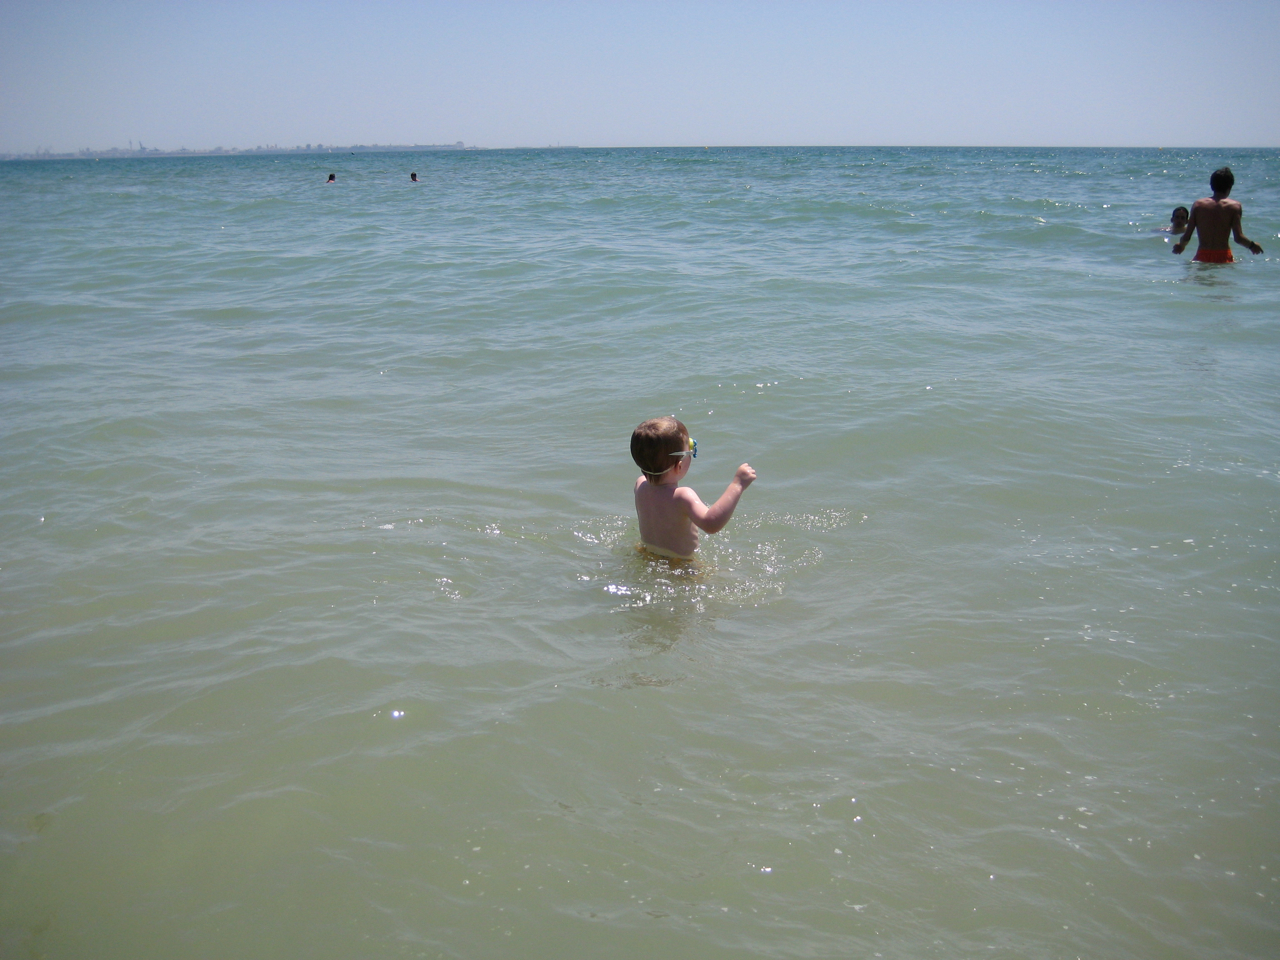 Fun in the water!